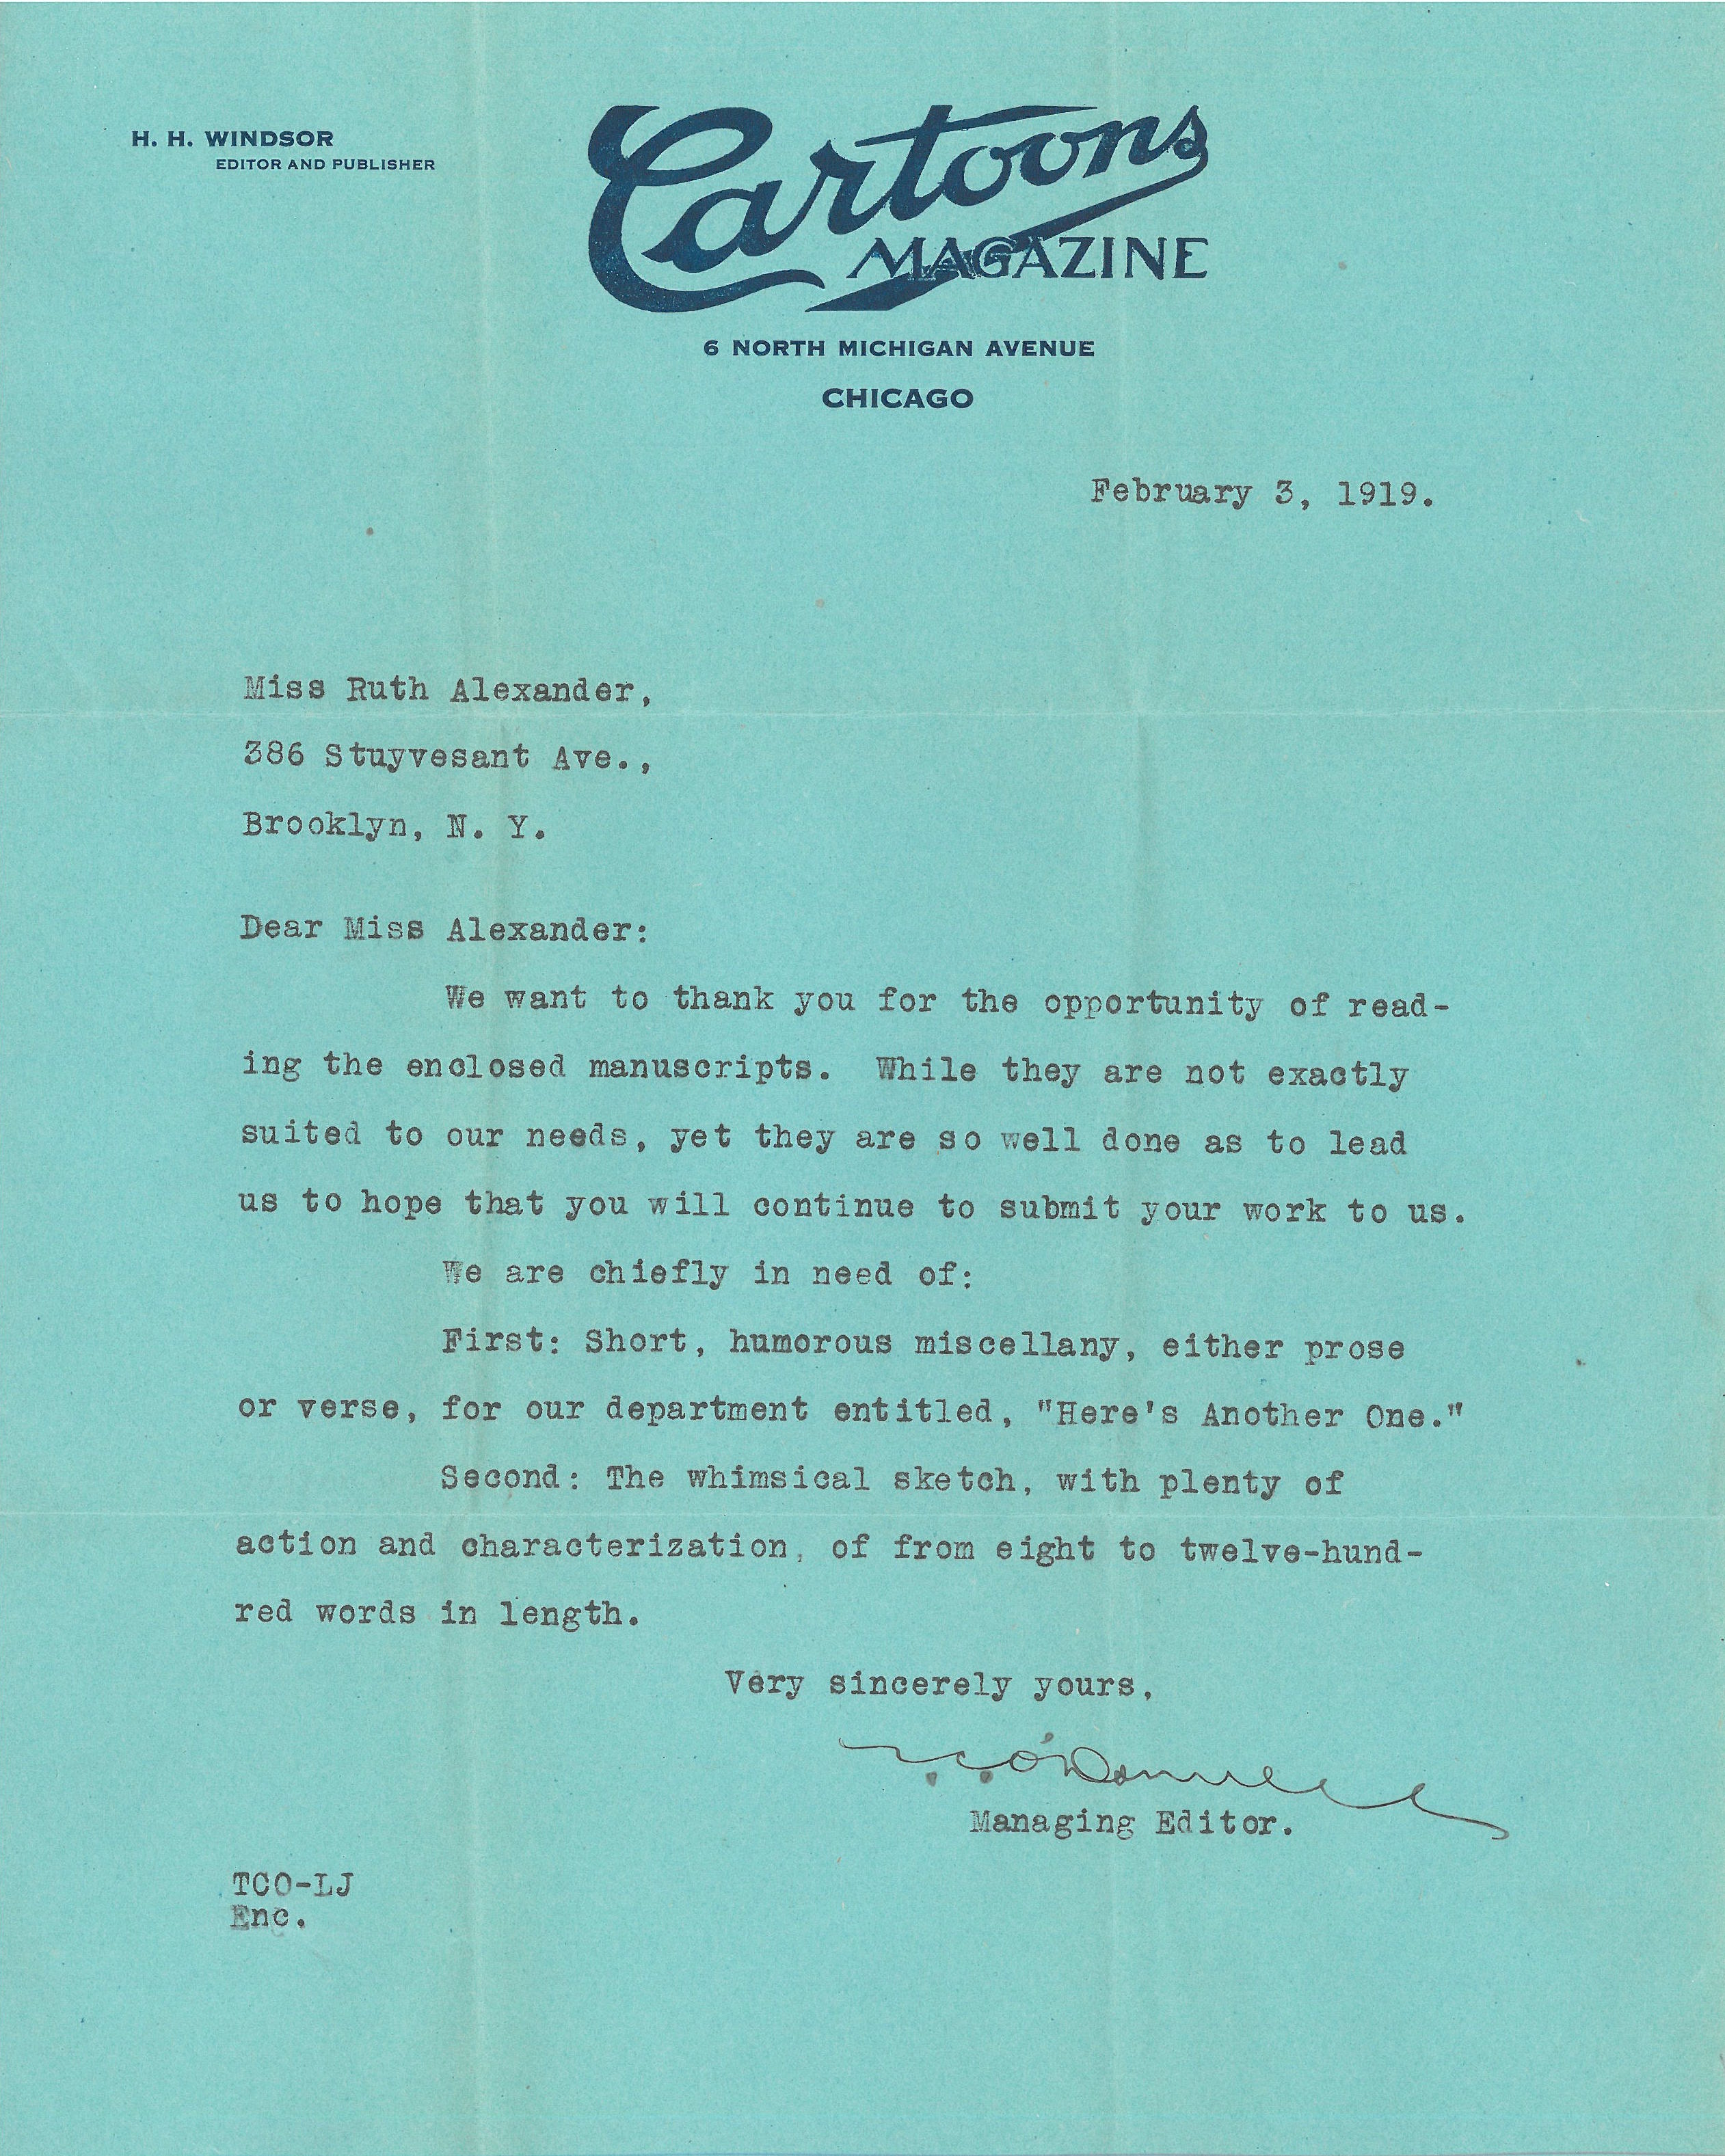 feb 1919 letter